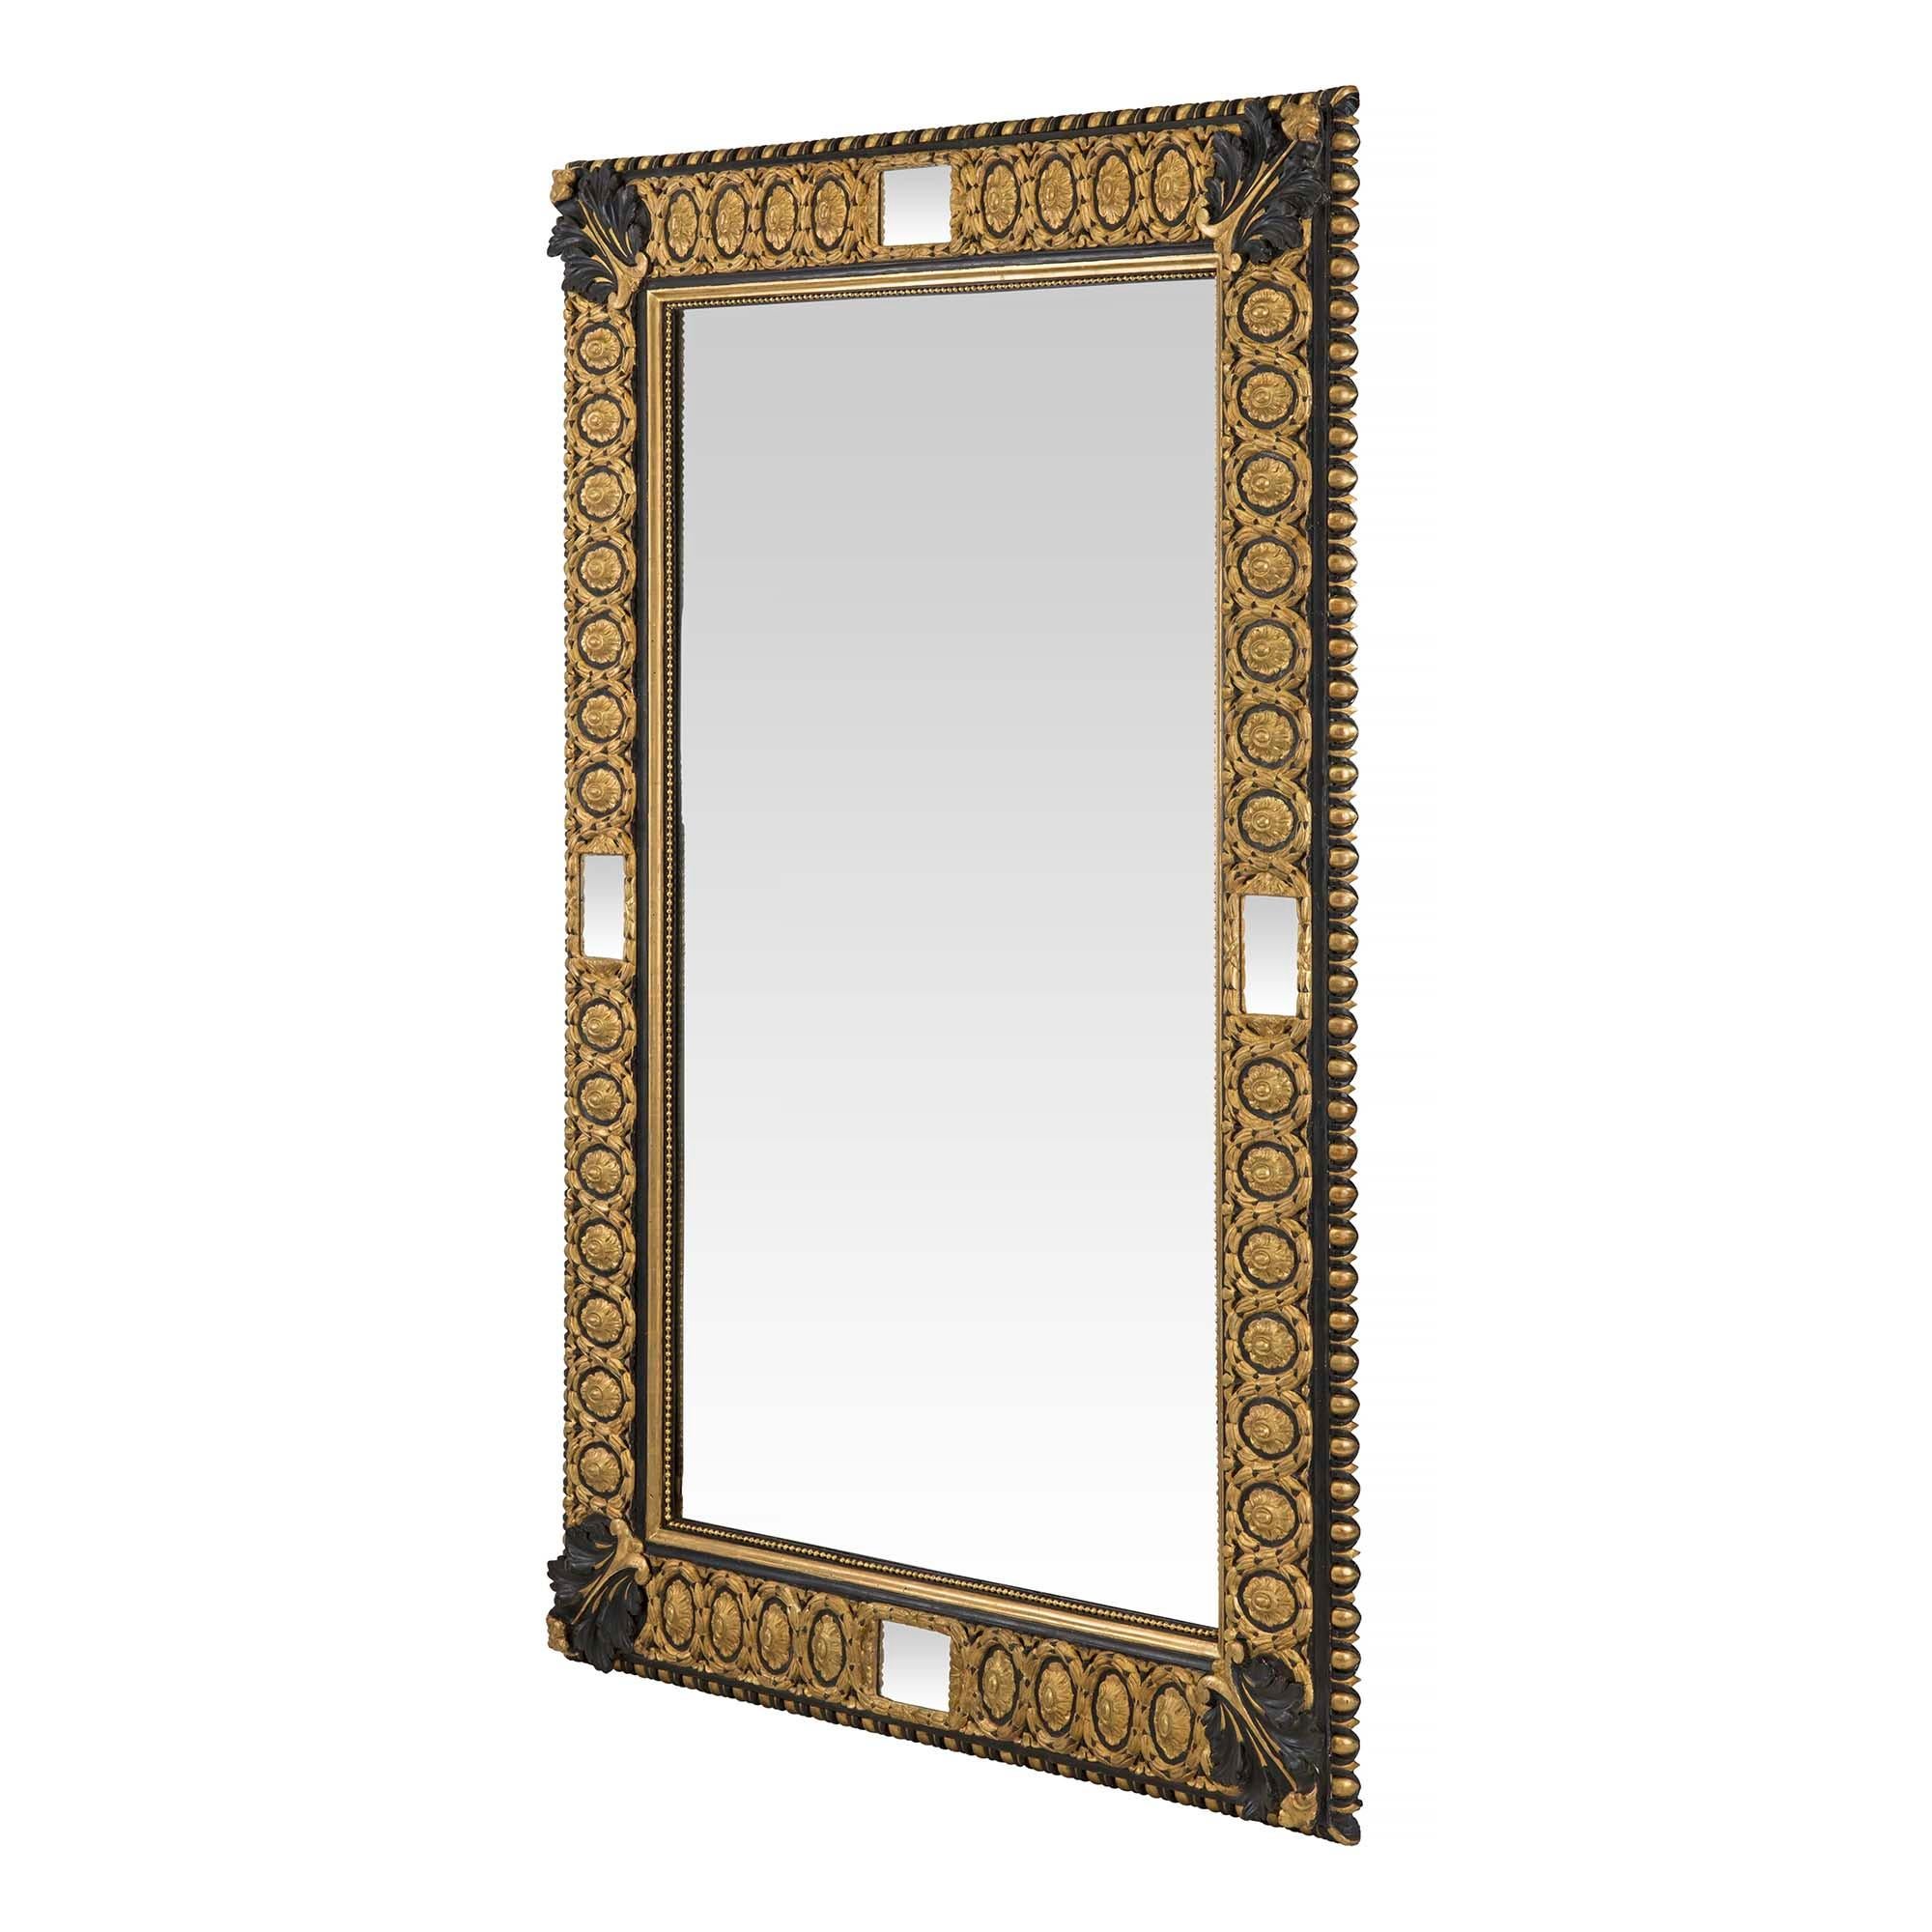 Très beau miroir italien du XIXe siècle, de style Louis XVI, en bois doré et polychrome noir. Le miroir rectangulaire a une garniture intérieure perlée avec une grande vague ovale et un motif de rosette. Au centre de chaque côté se trouve un petit